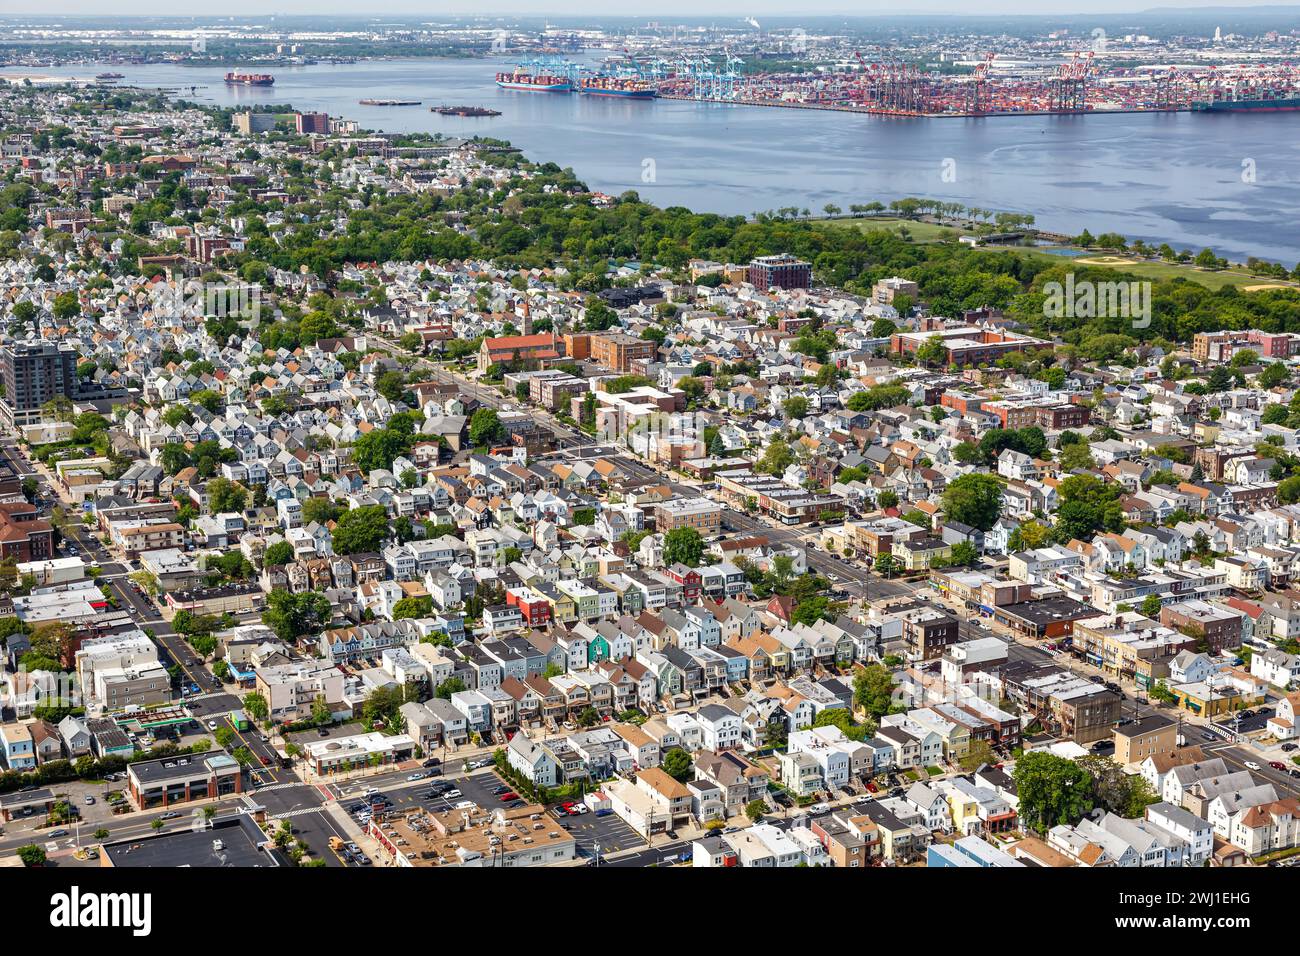 Bayonne, vicino agli immobili di New York, sulla Newark Bay, vista aerea nel New Jersey, Stati Uniti Foto Stock